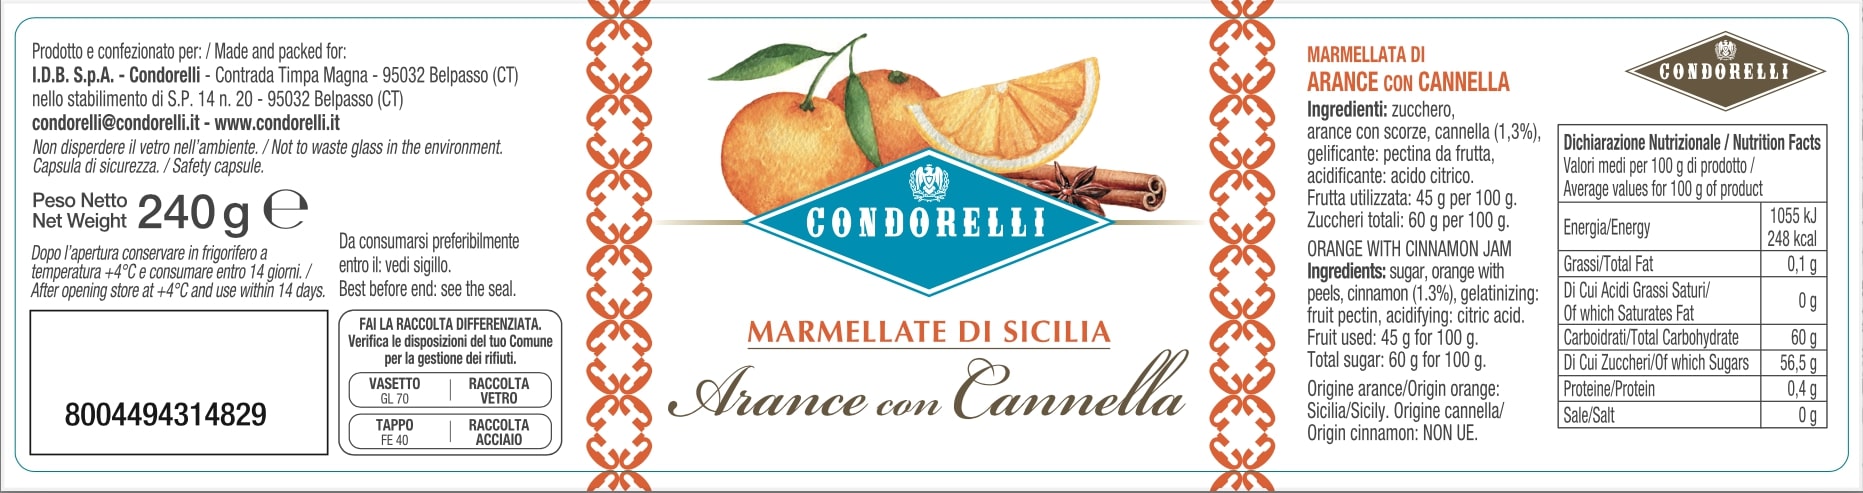 Marmellata di Sicilia - Arance e Cannella